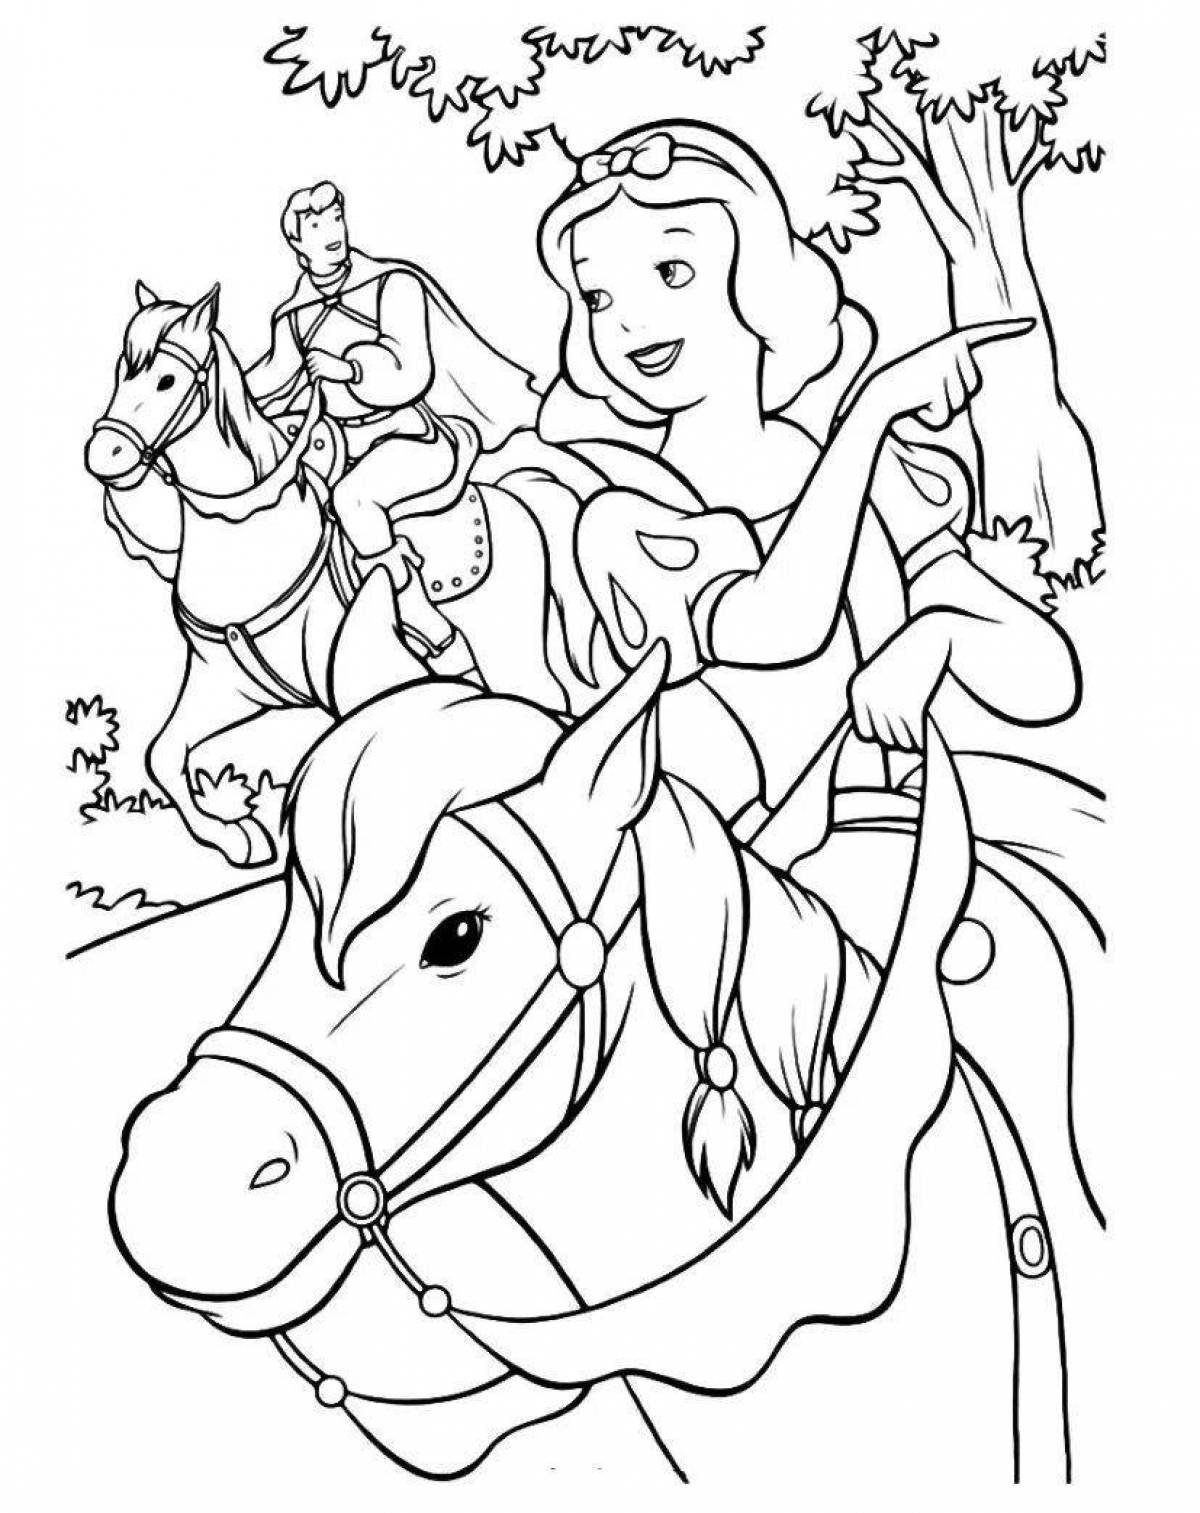 Раскраска Принцесса на лошади, скачать и распечатать раскраску раздела Принцессы